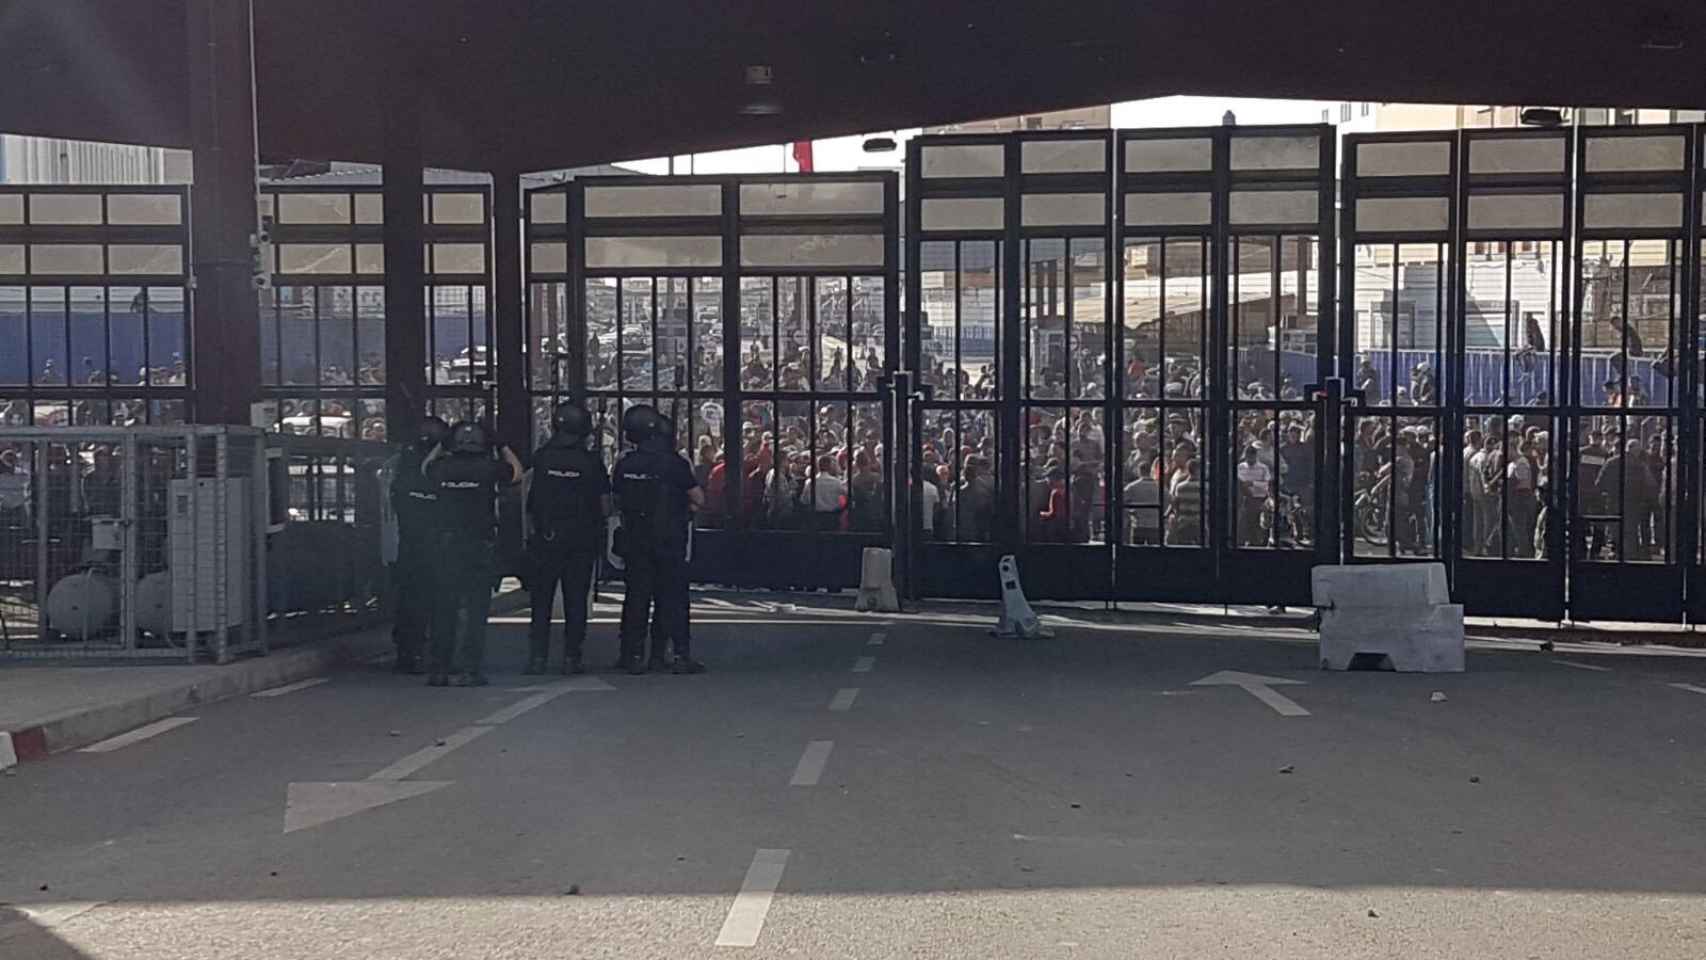 Caos extremo" en las protestas del martes en la frontera de Melilla